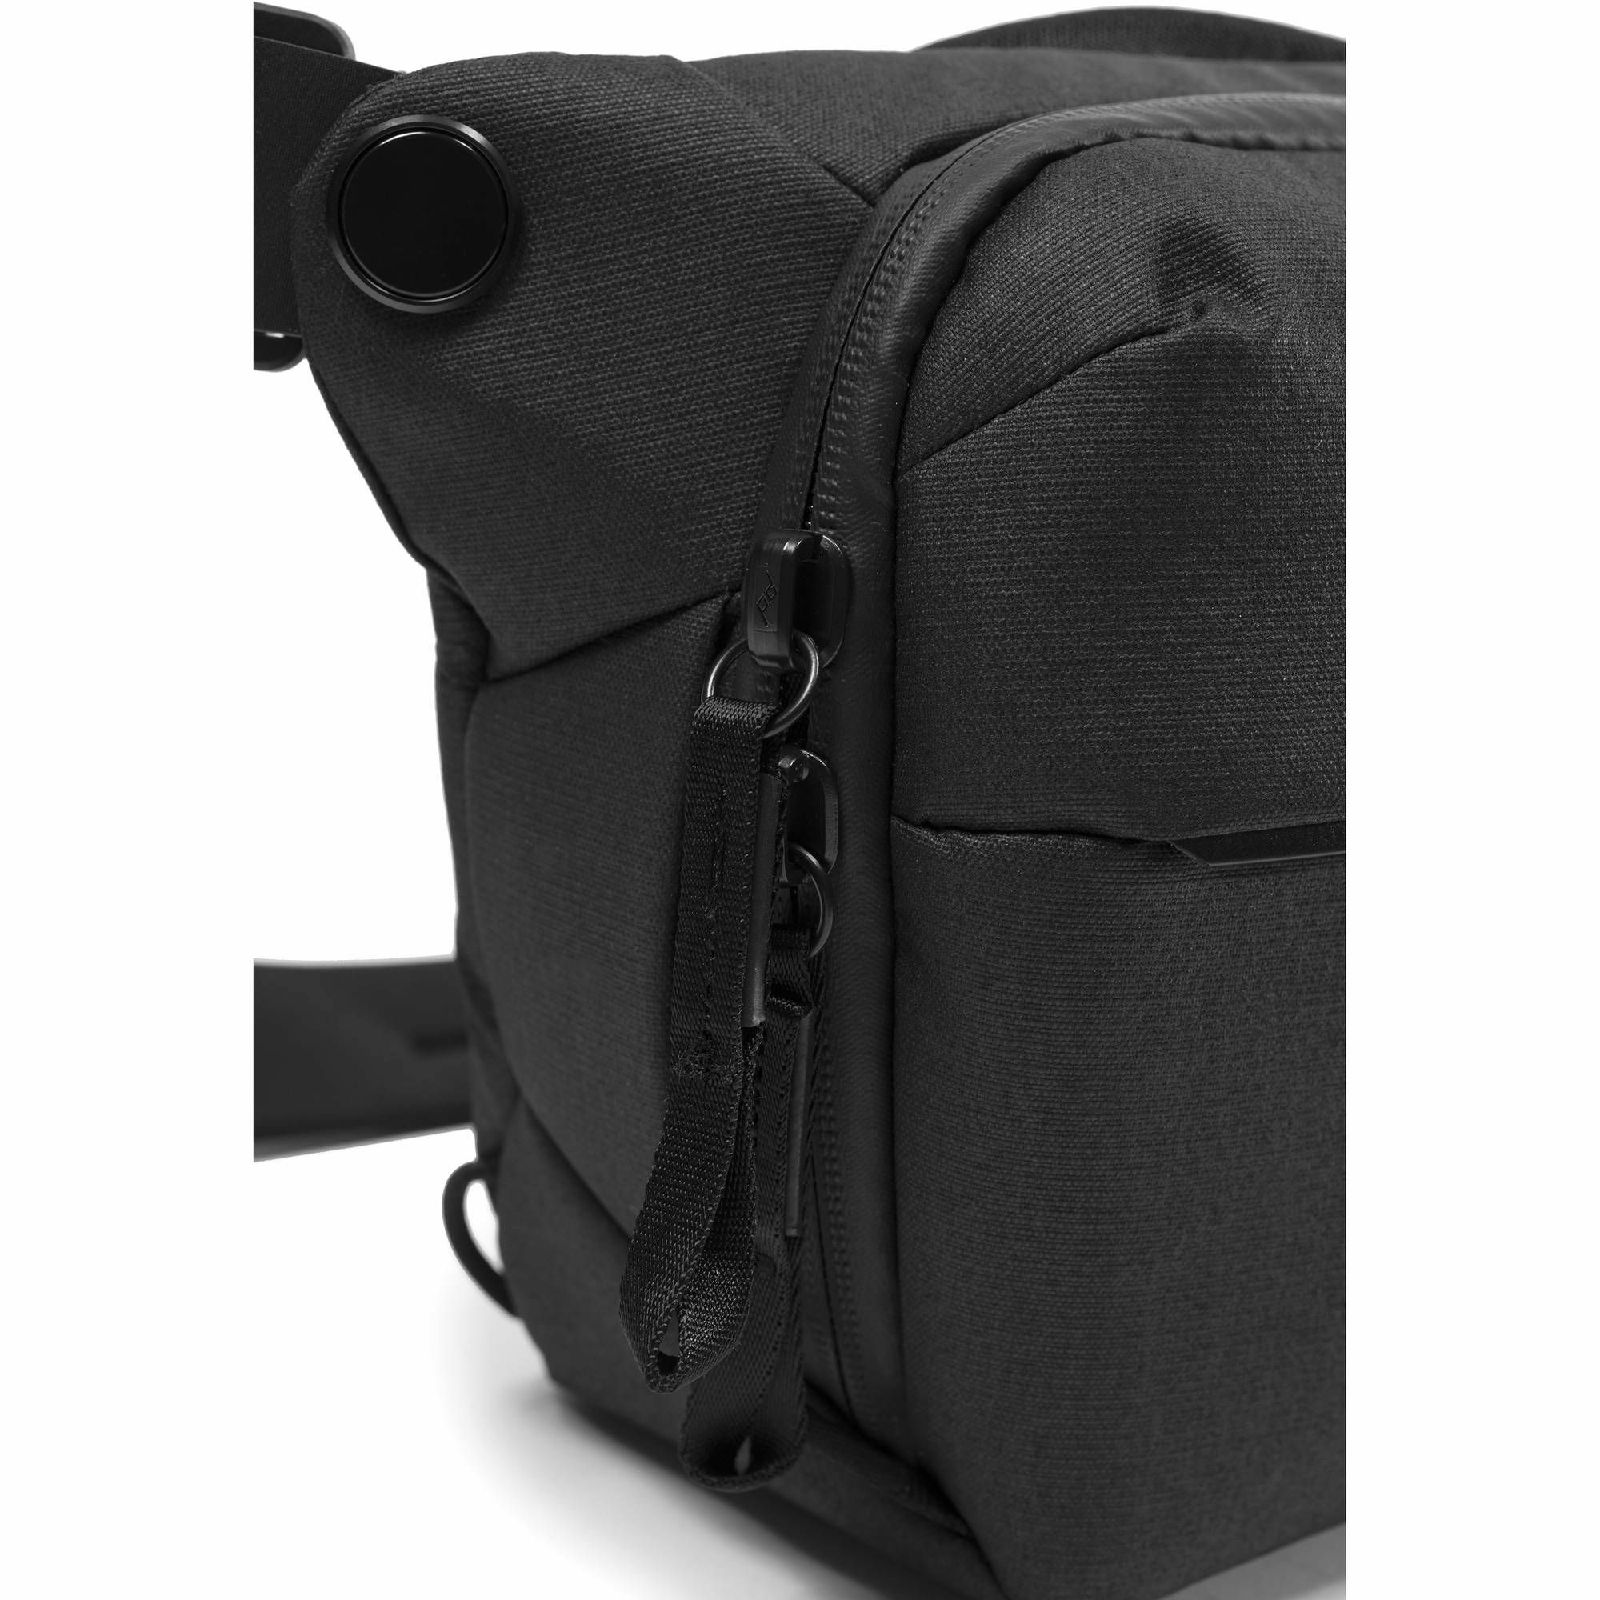 Peak Design Everyday Sling 6L v2 Black crna torba za DSLR fotoaparat (BEDS-6-BK-2)